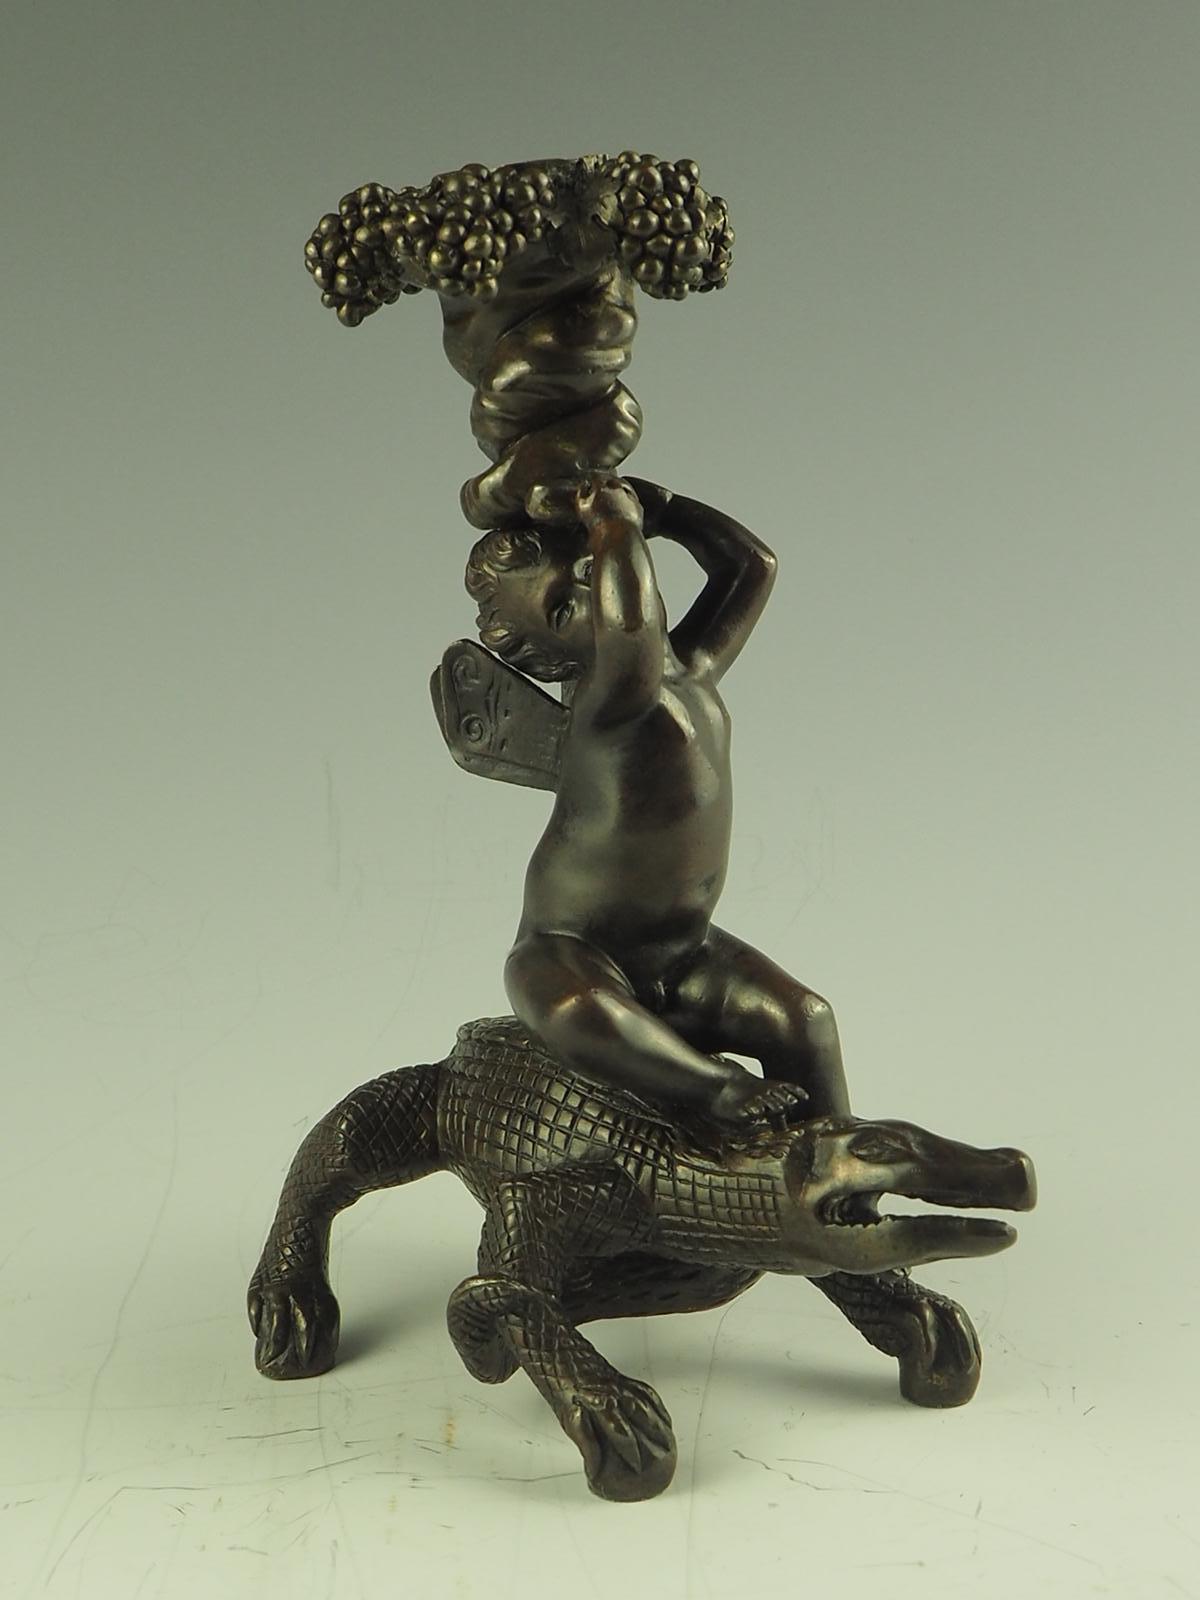 Chandelier en bronze ancien, représentant un putto bacchanalien à cheval sur un crocodile (ou un alligator), tenant en l'air des vignes entrelacées, s'élevant jusqu'à des grappes de raisin et des feuilles de vigne. Le putto est assis sur un